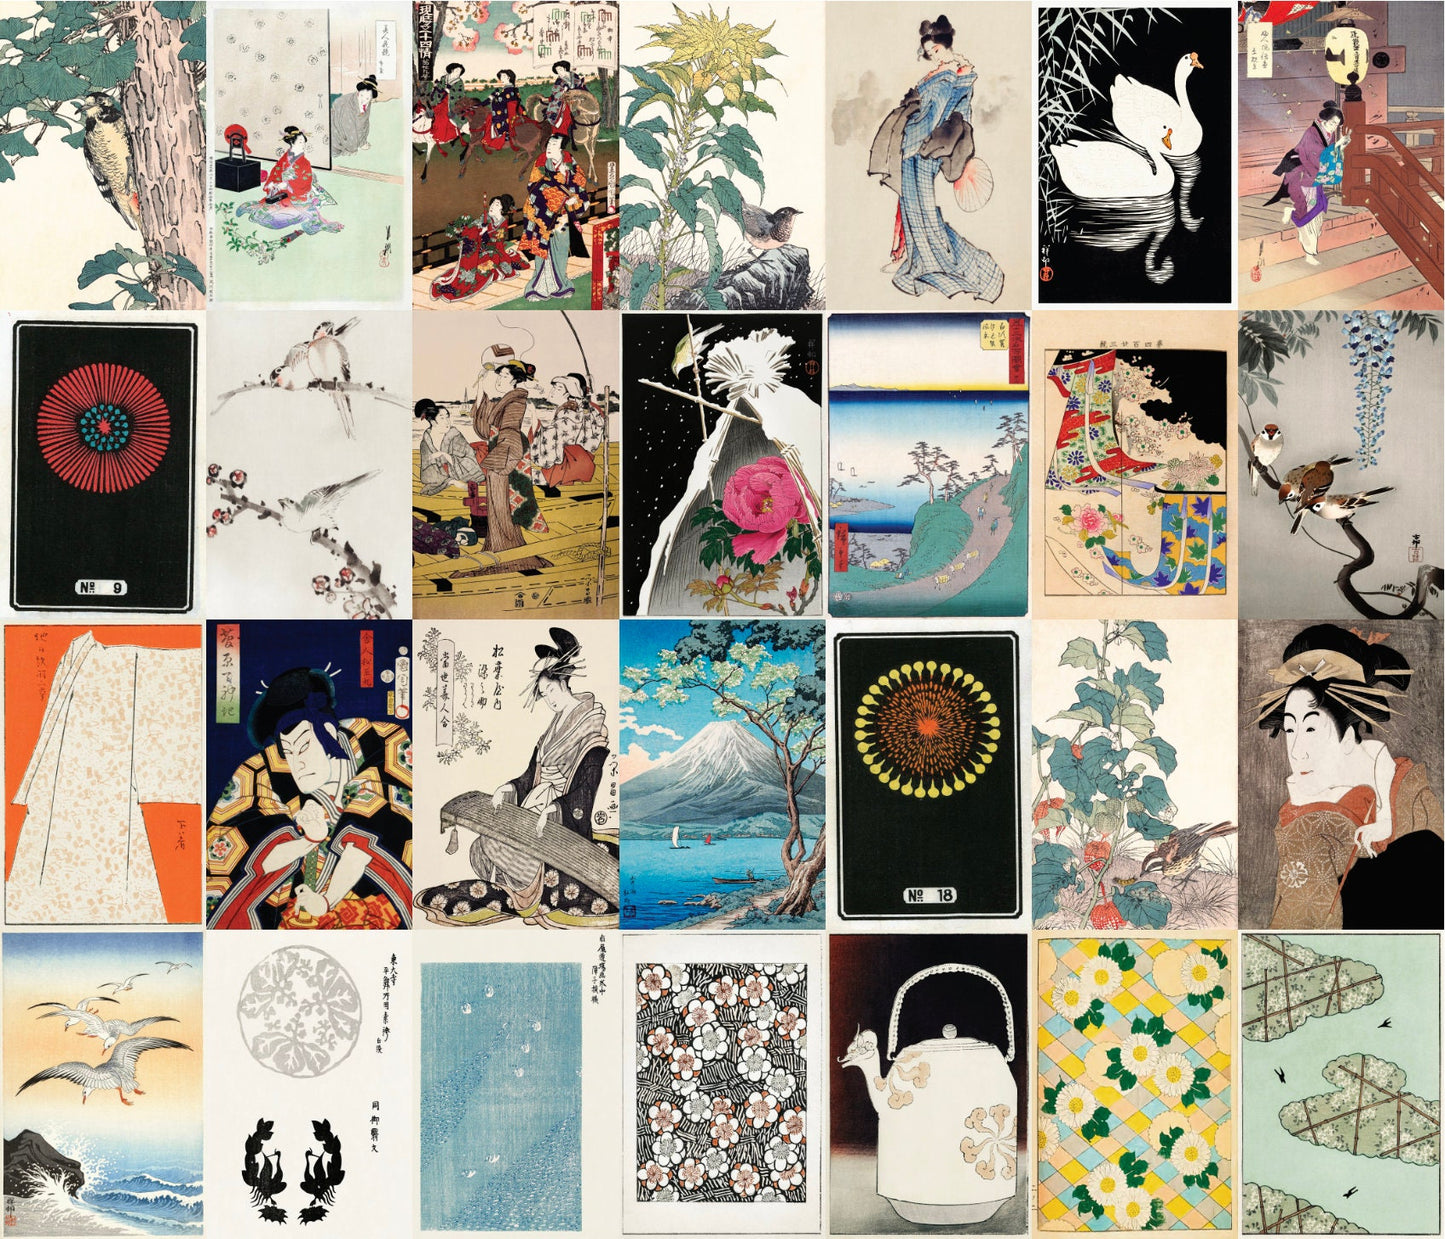 Japanese Ukiyo-e Woodblock Print 4"x6" Collage Kit Set 7 [110 Images]